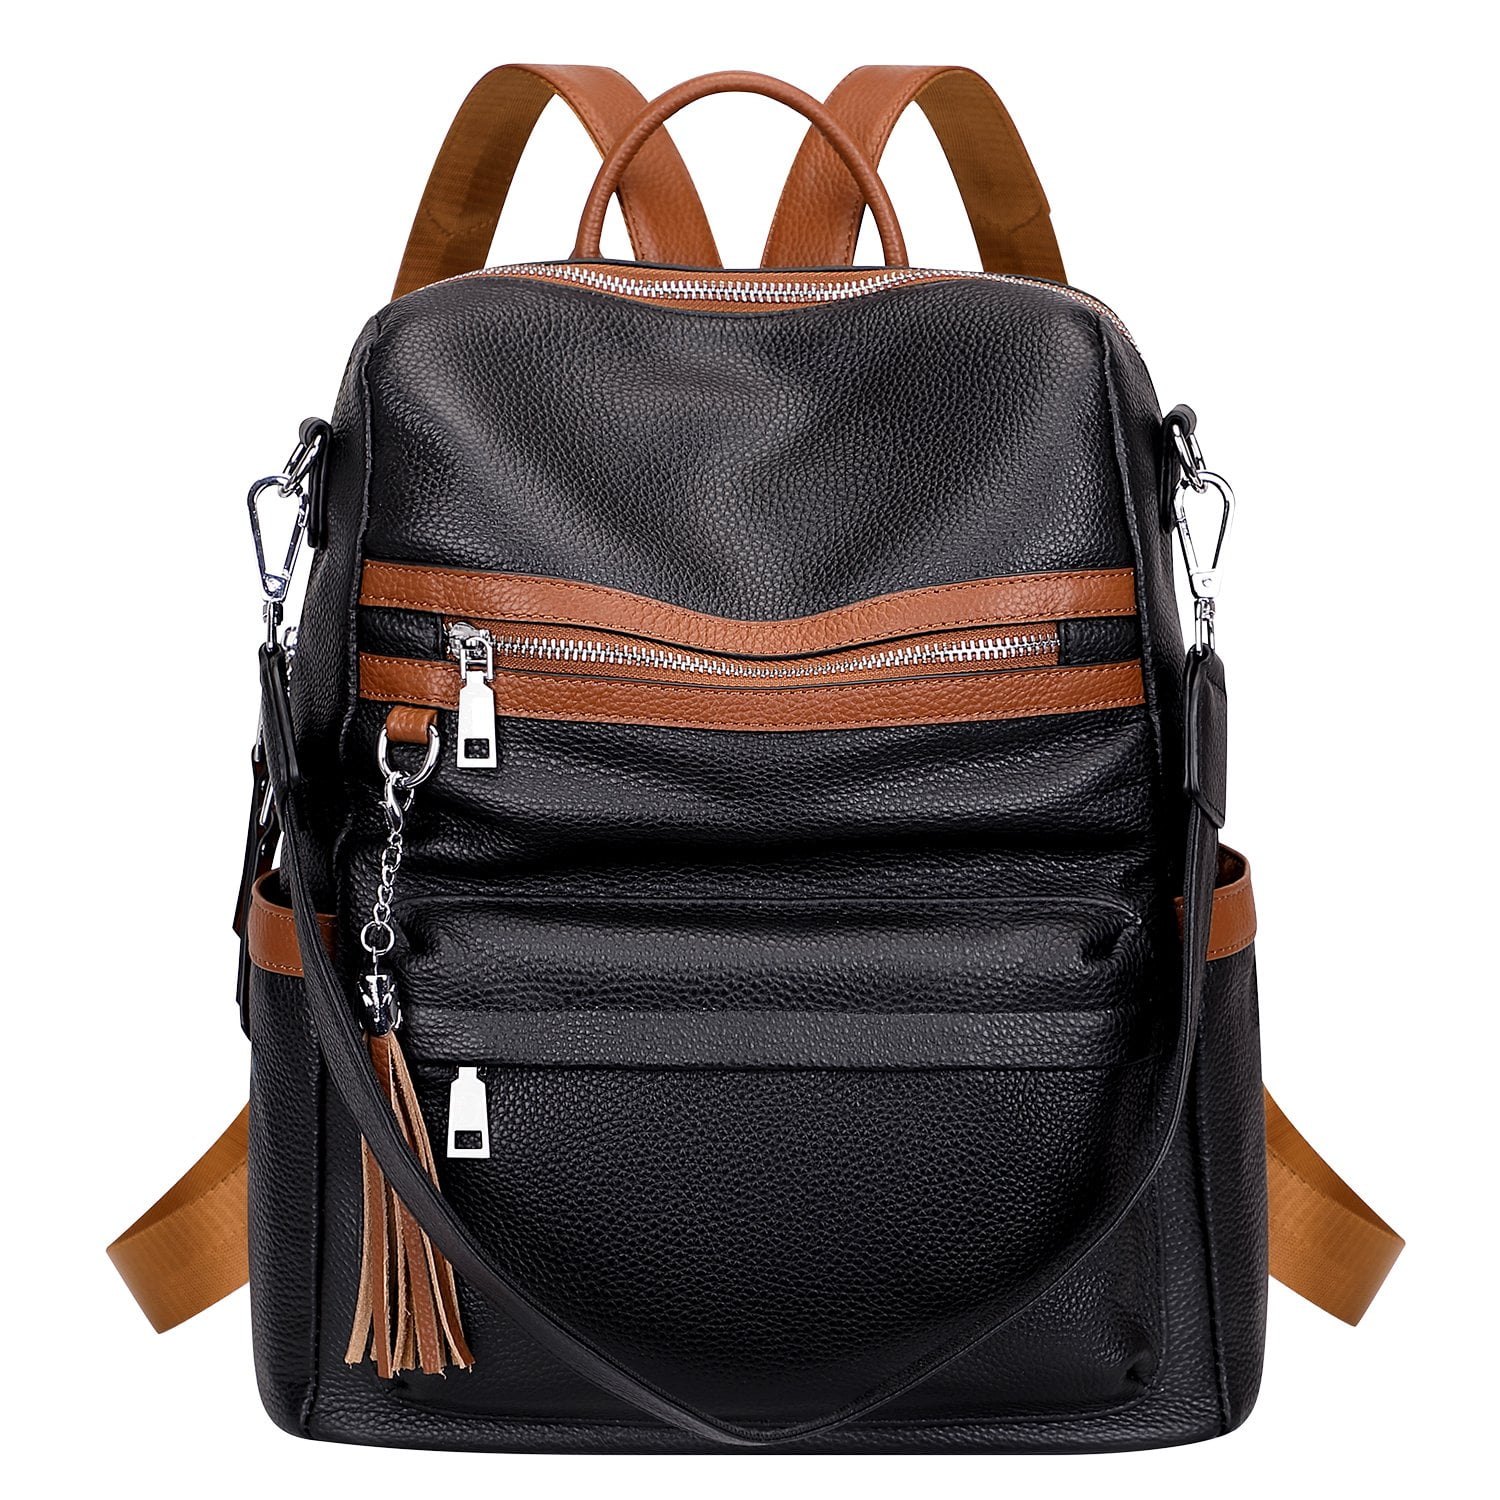 ALTOSY Genuine Leather Backpack Purse Elegant Convertible Shoulder Bag ...